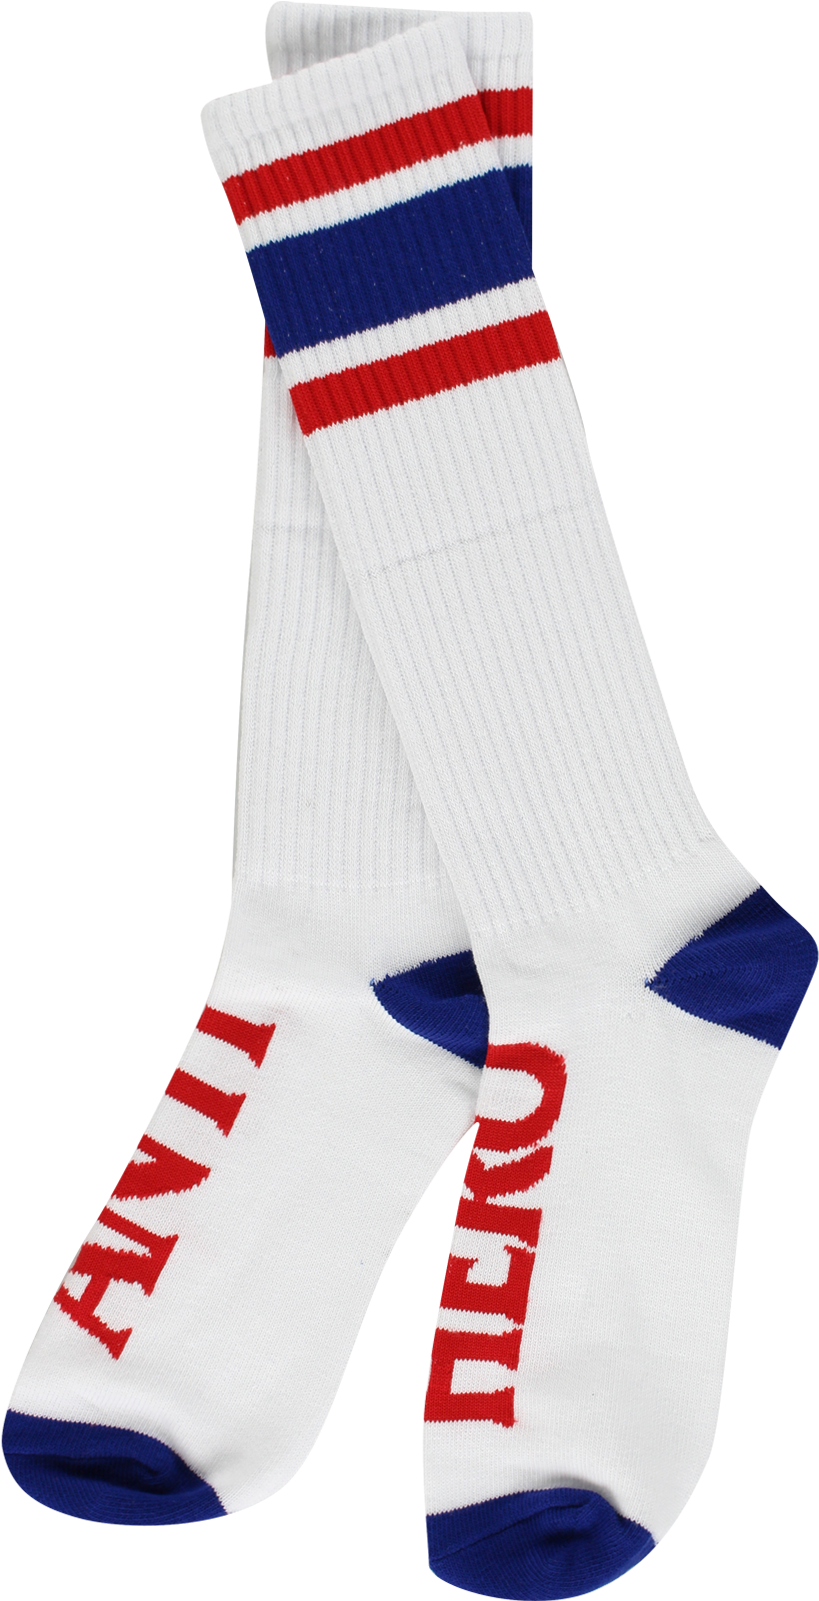 Antihero Stryper Calf Socks White/navy/red - Sock Clipart - Large Size ...